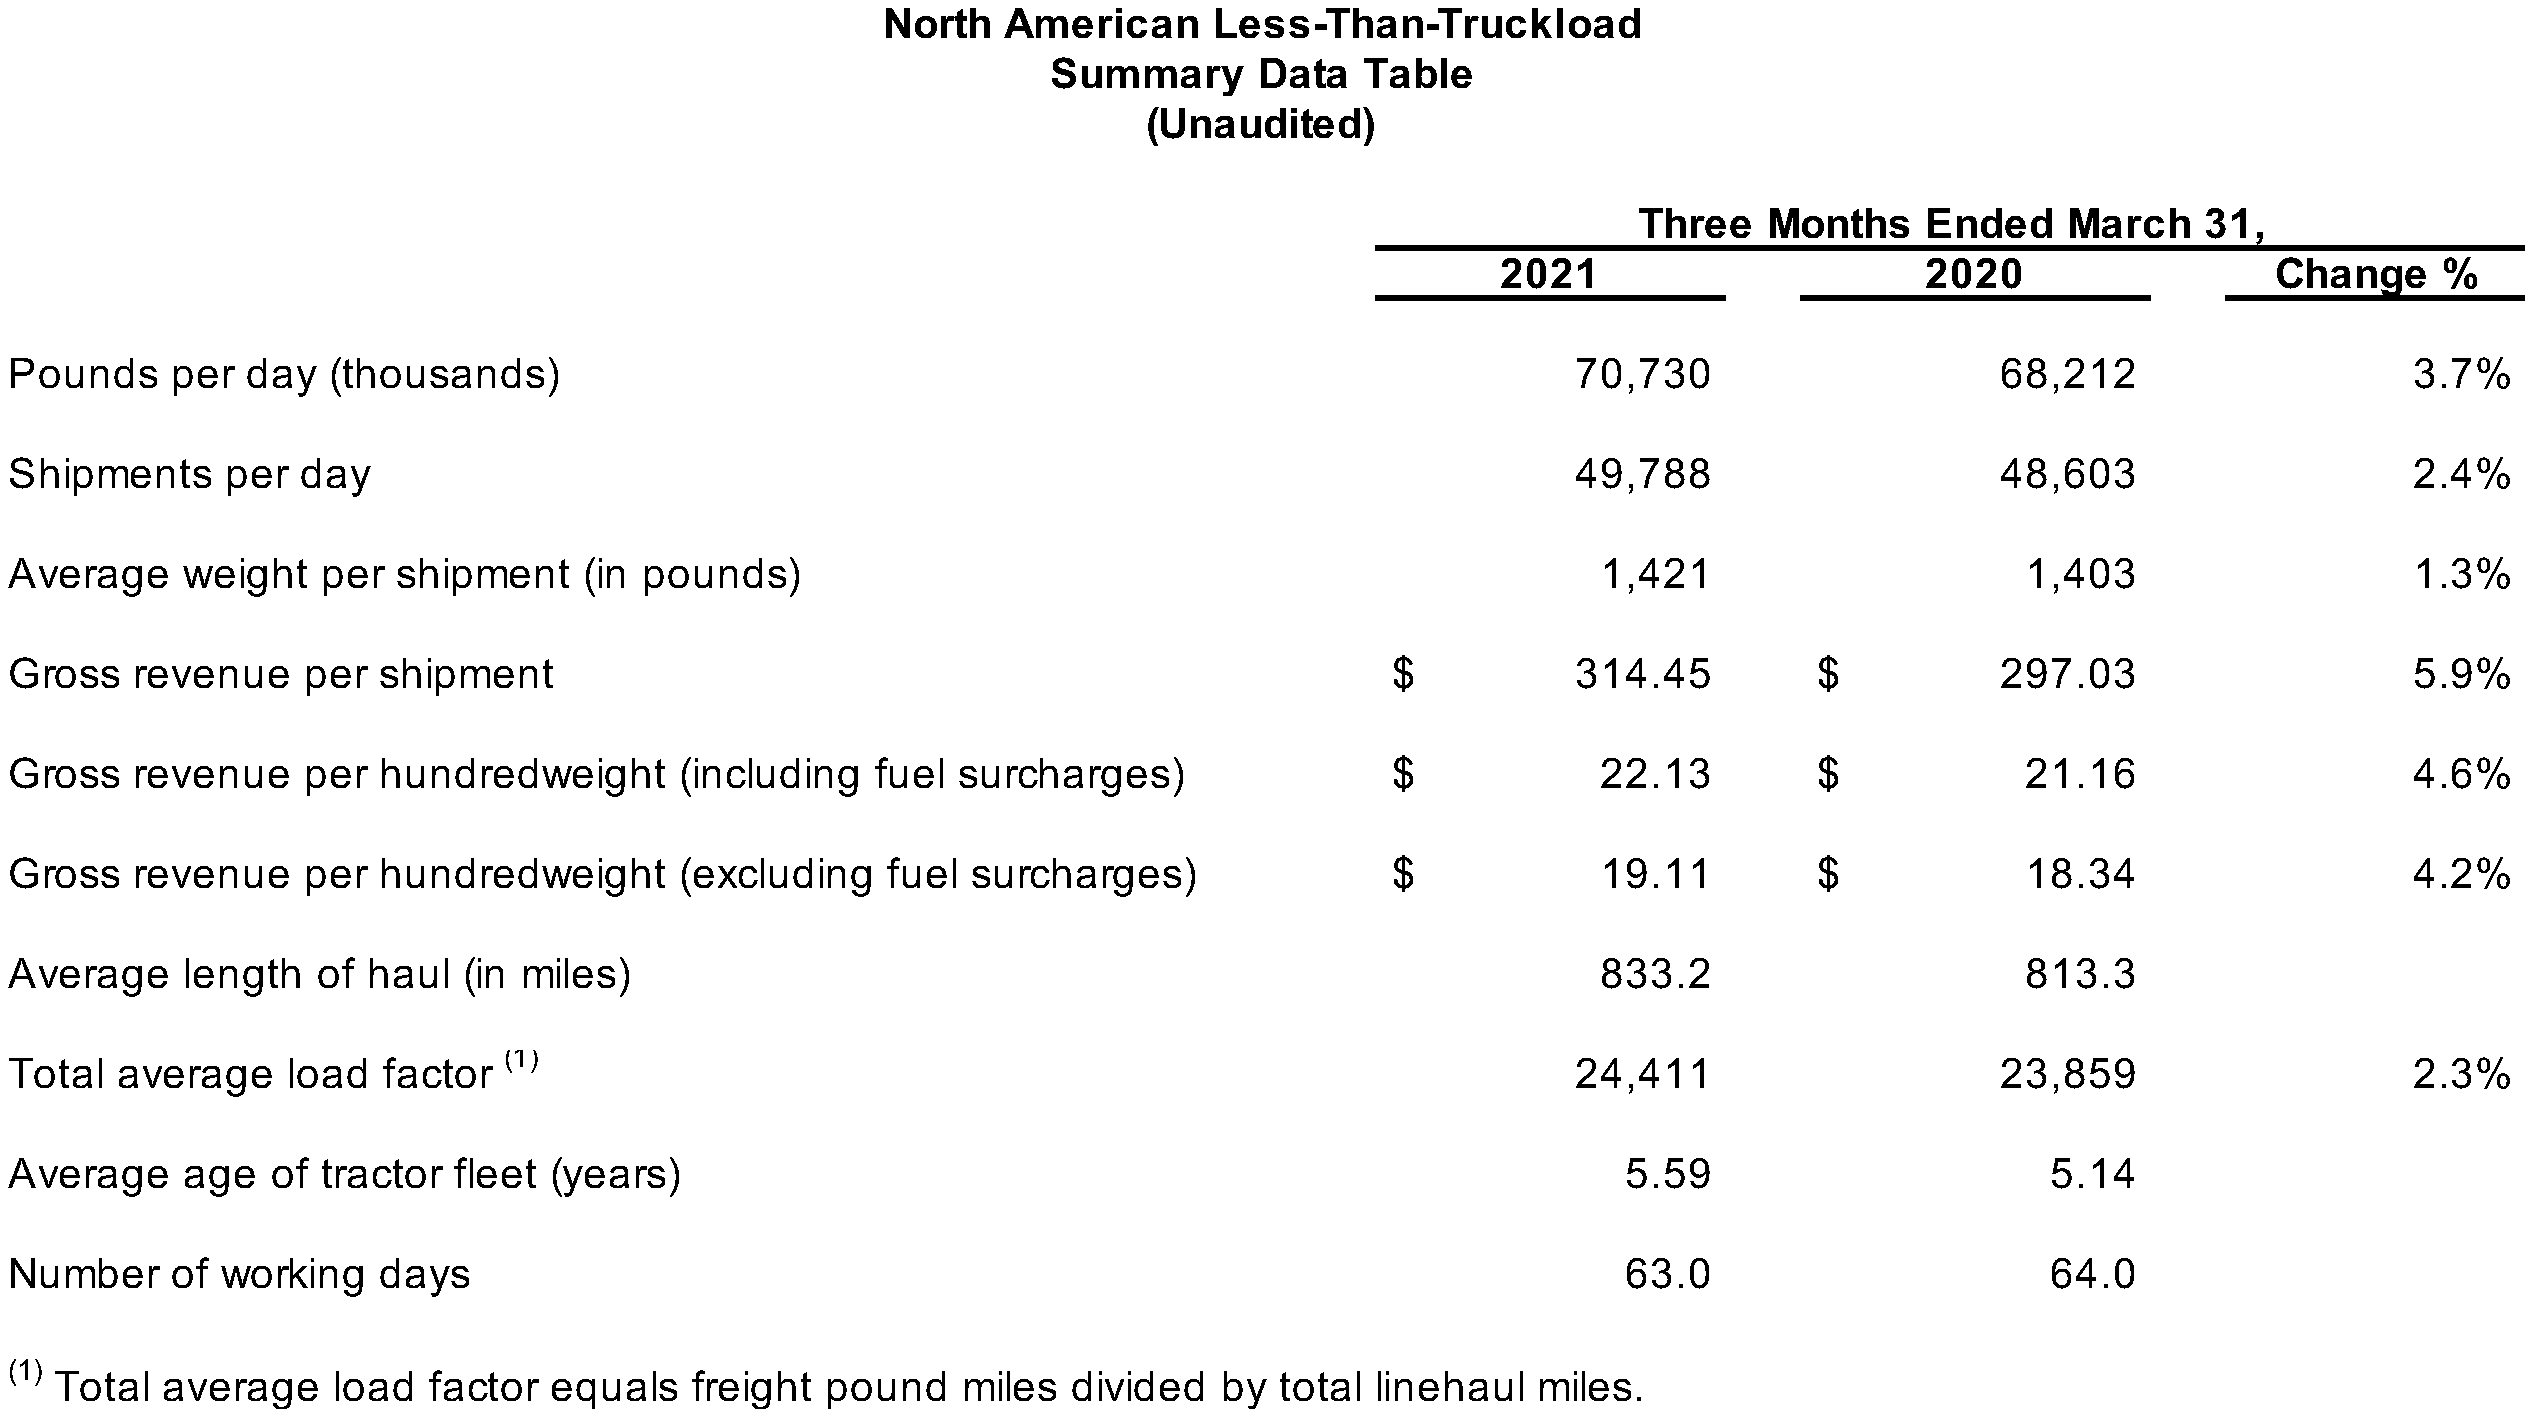 North American LTL Summary Data Table (Unaudited)